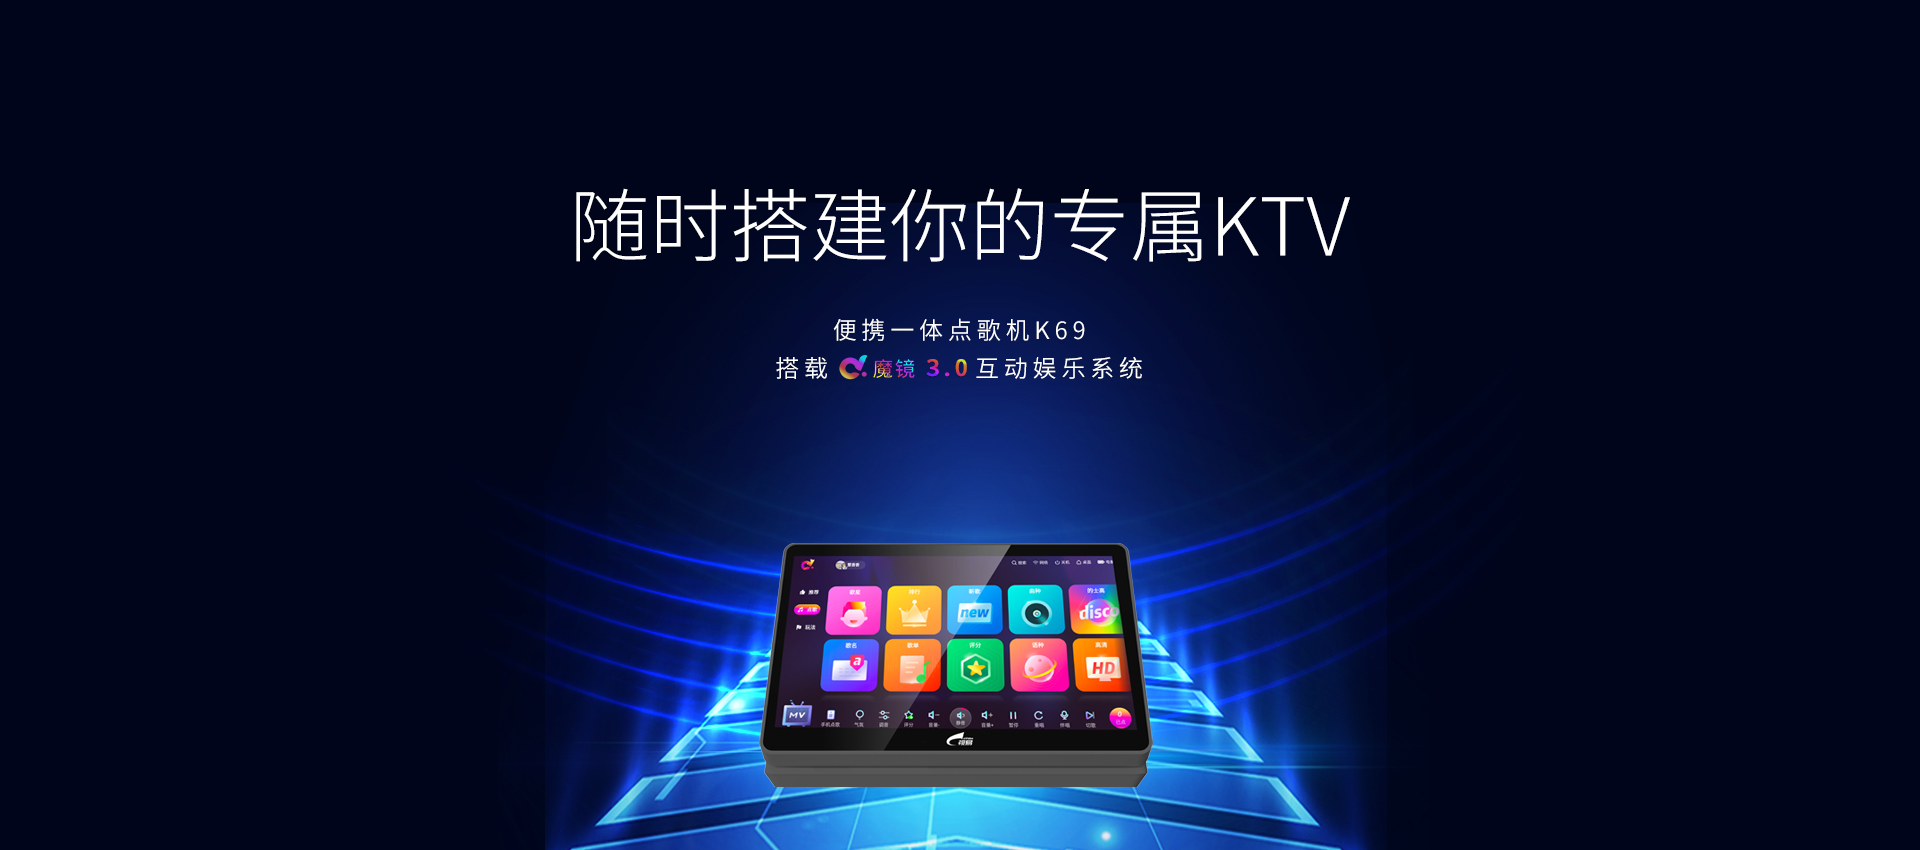 【雷视录播一体机_allcast录播系统】-北京视讯天行科技有限公司